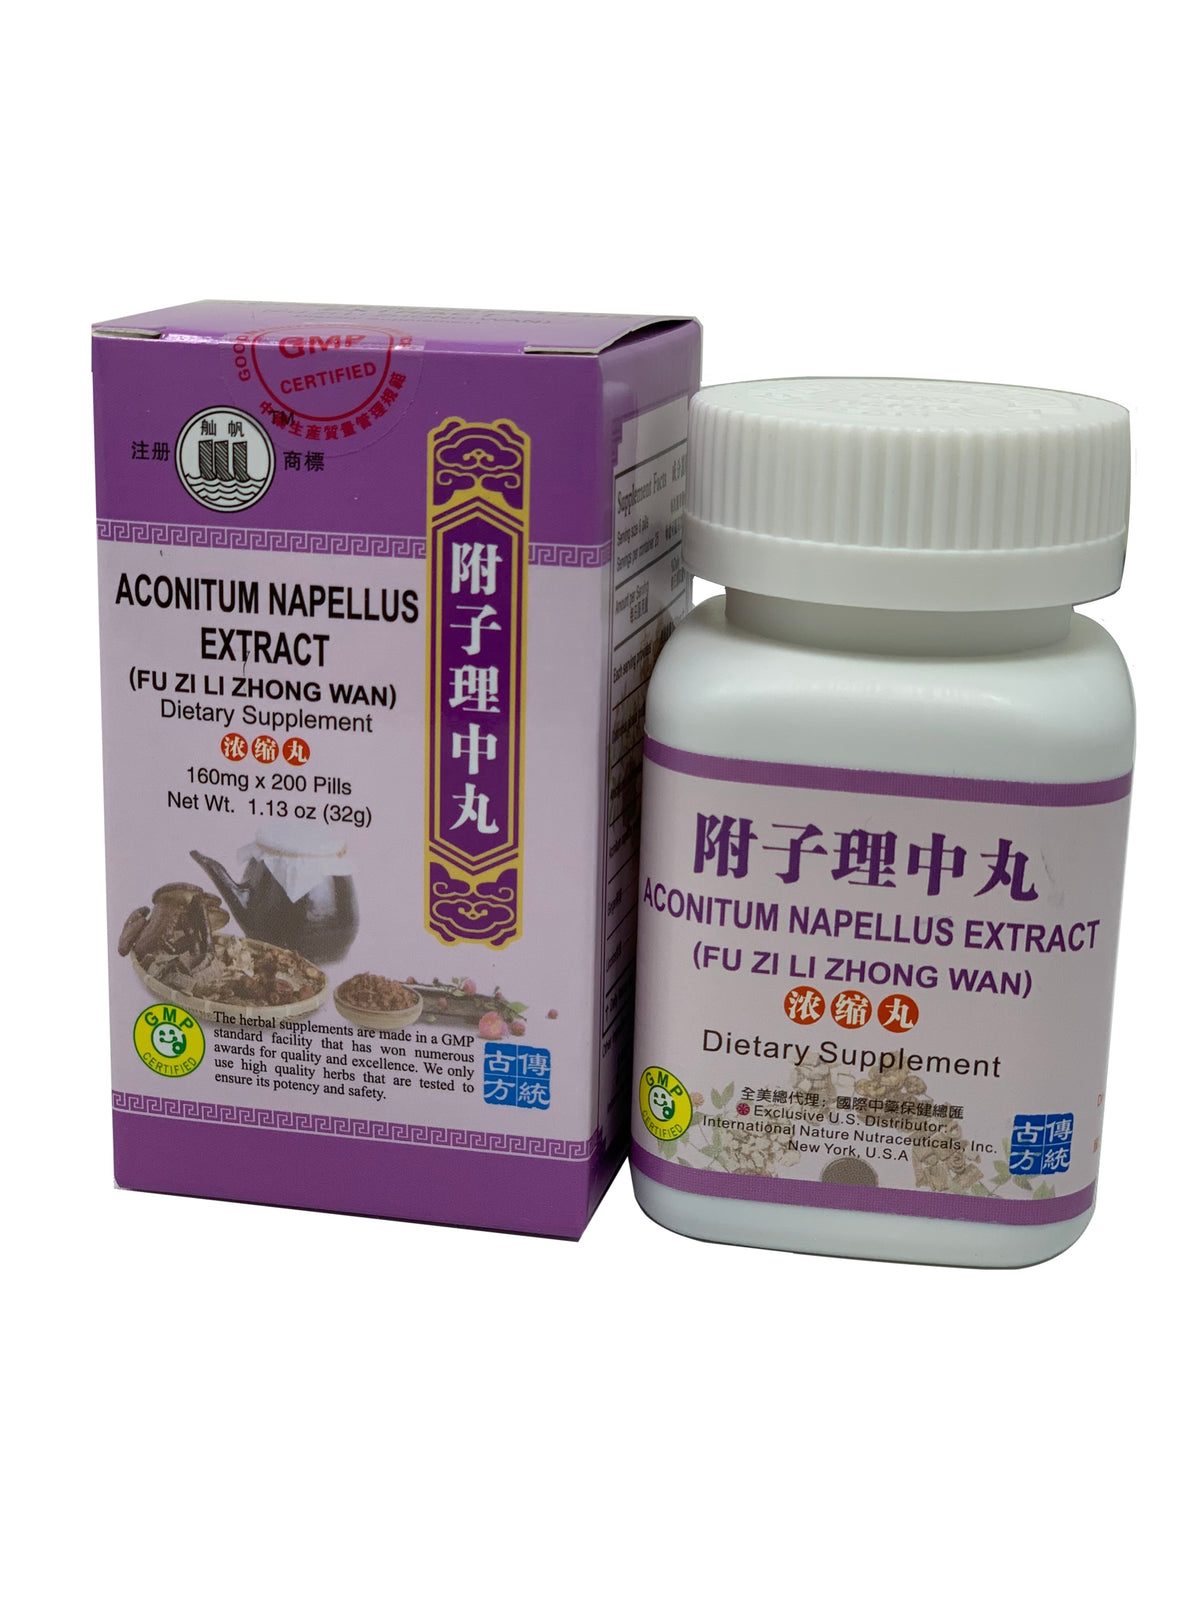 Aconitum Napellus Extract (Fu Zi Li Zhong Wan)